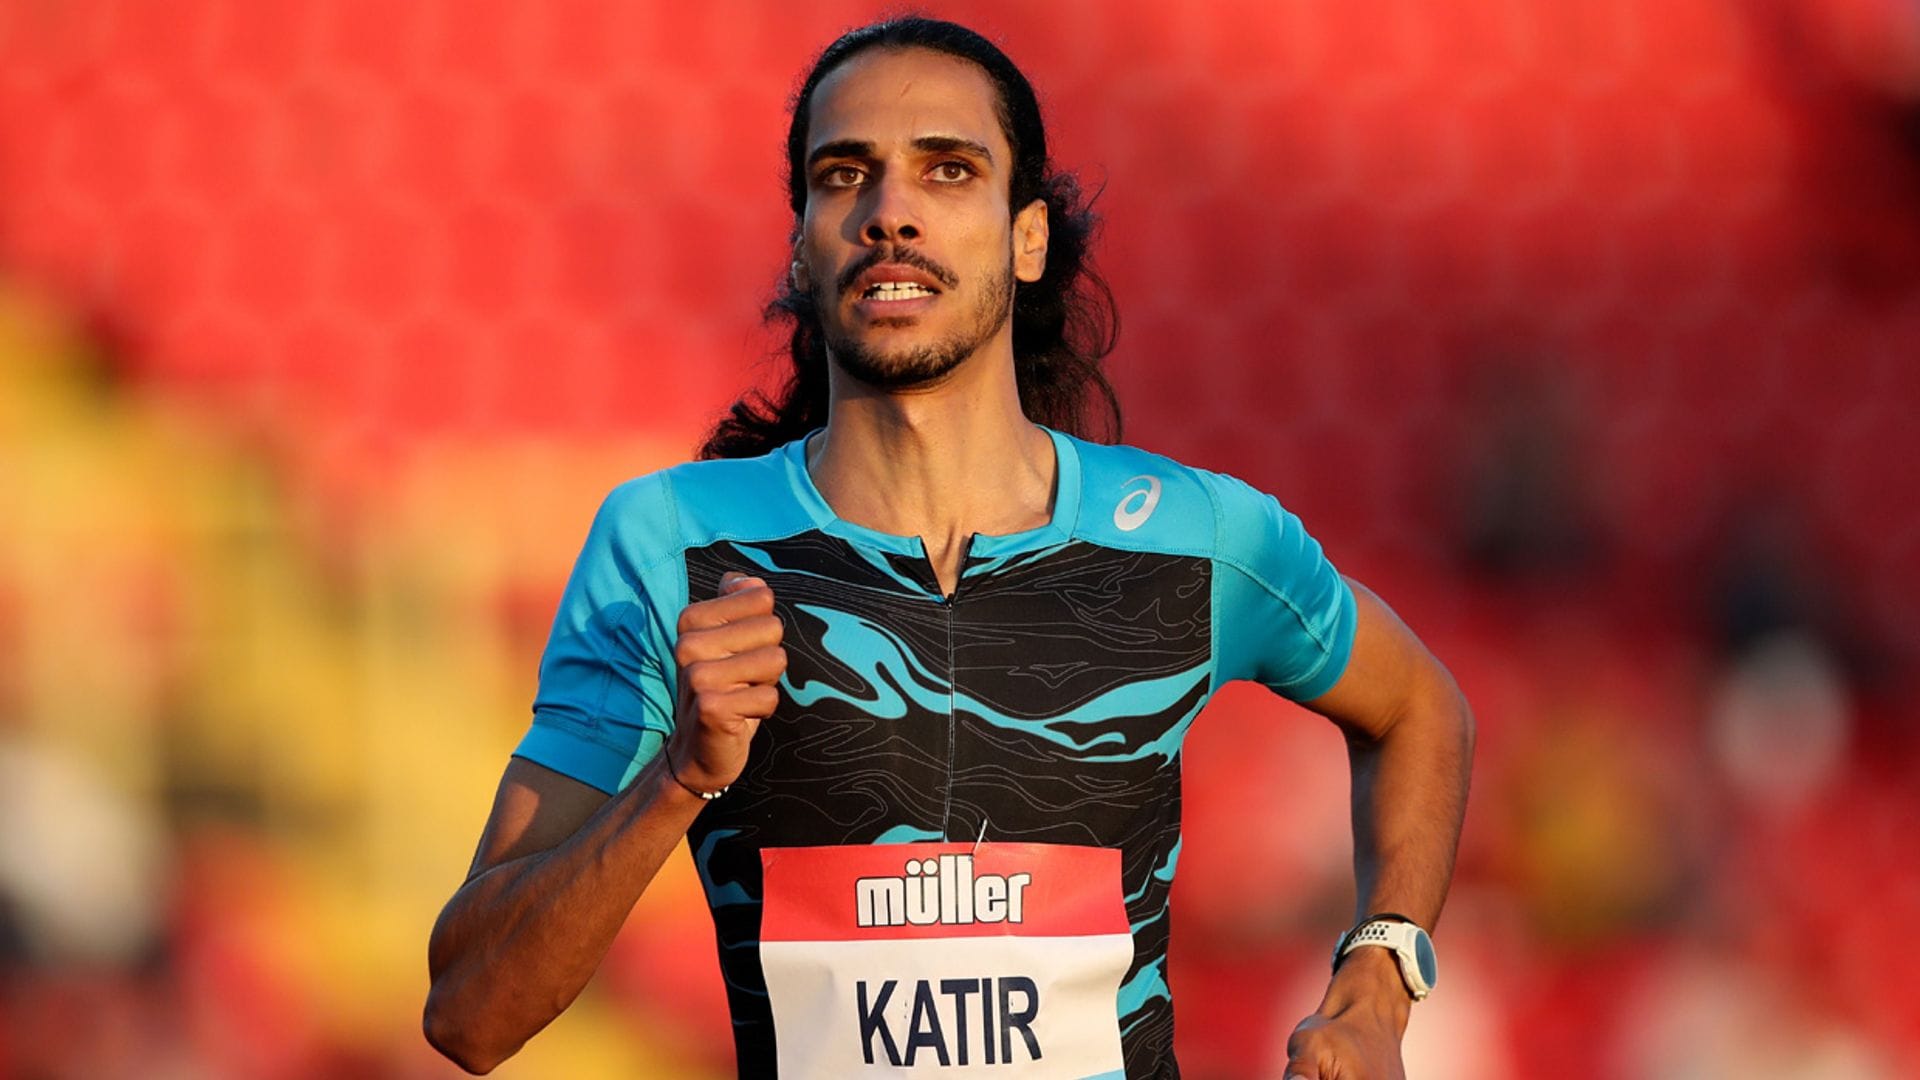 Modelo, opositor a bombero y poeta: así es Mohamed Katir, la gran sensación del atletismo español